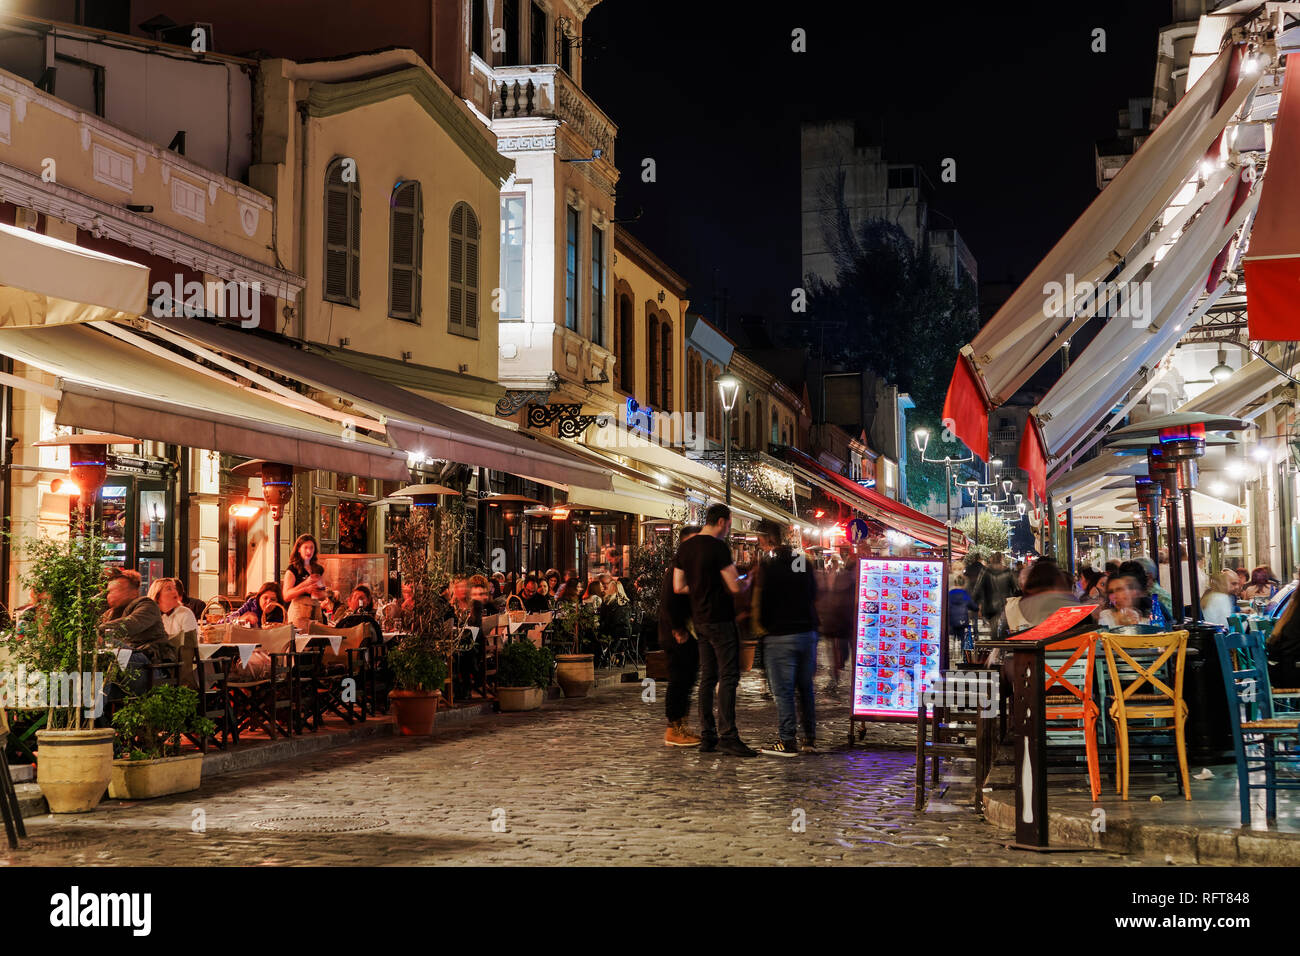 La zone Ladadika de nuit avec foule en zone piétonne du quartier célèbre pour ses bars et restaurants, Thessalonique, Grèce, Europe Banque D'Images